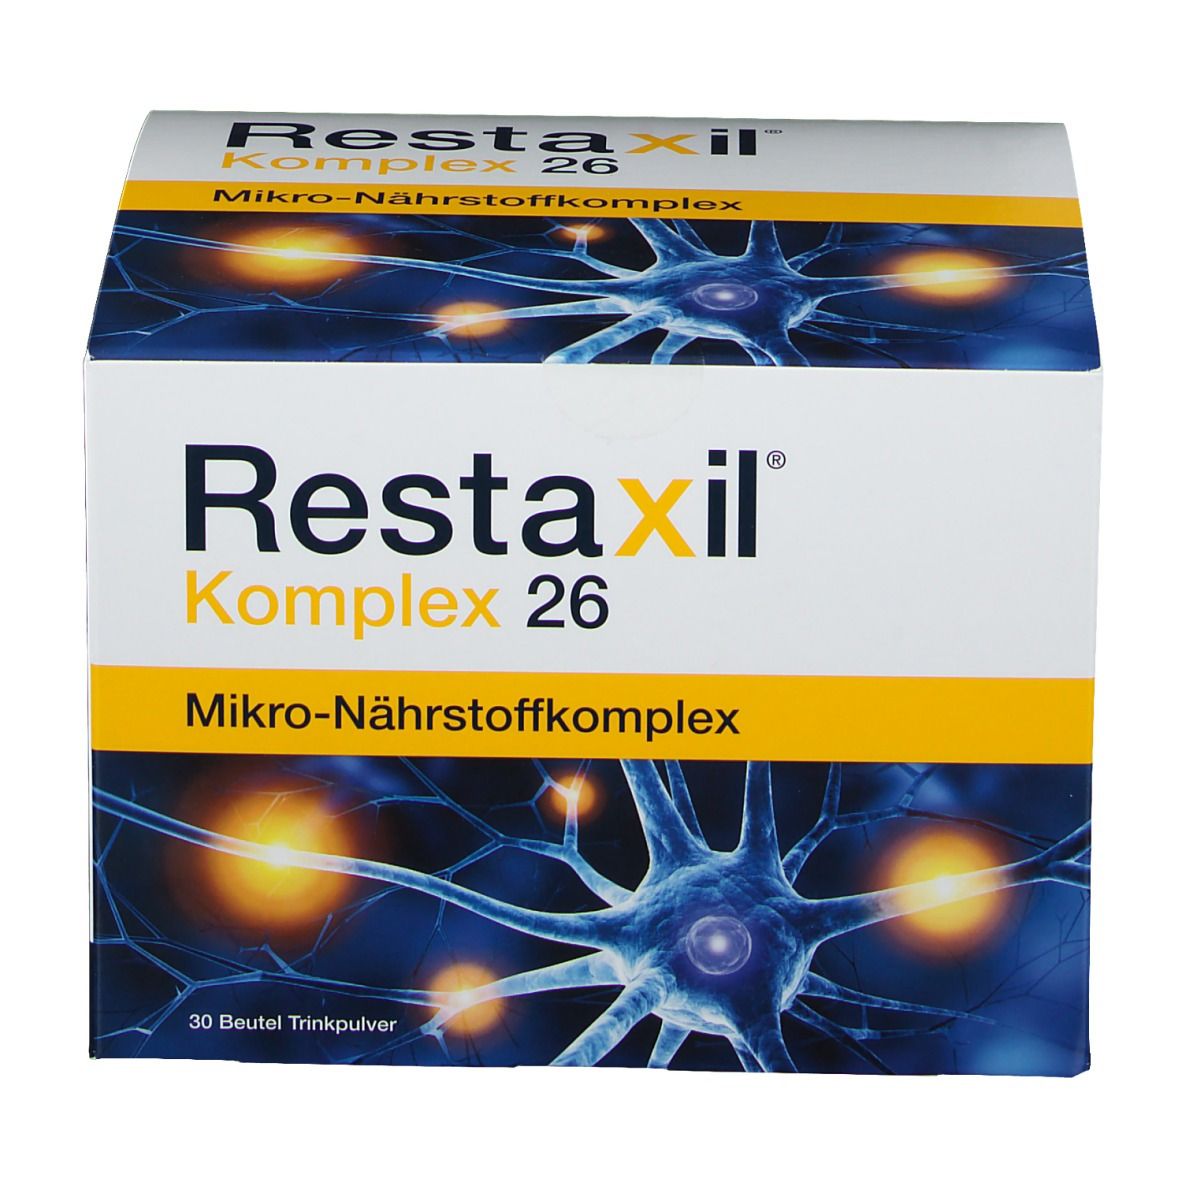 RESTAXIL® Komplex 26